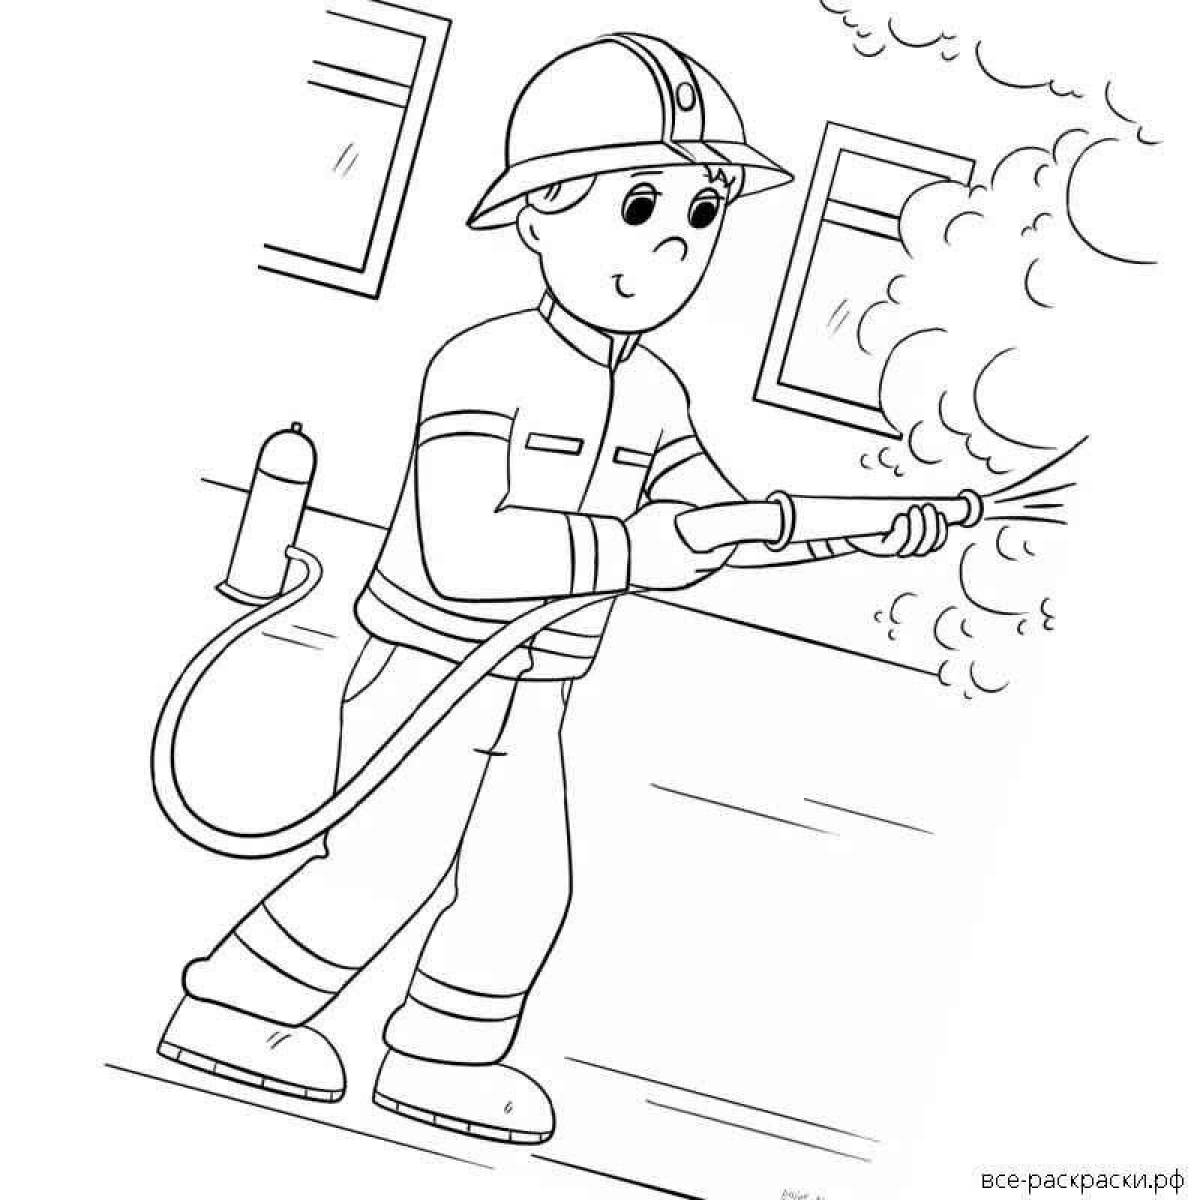 Раскраска профессии пожарник для детей